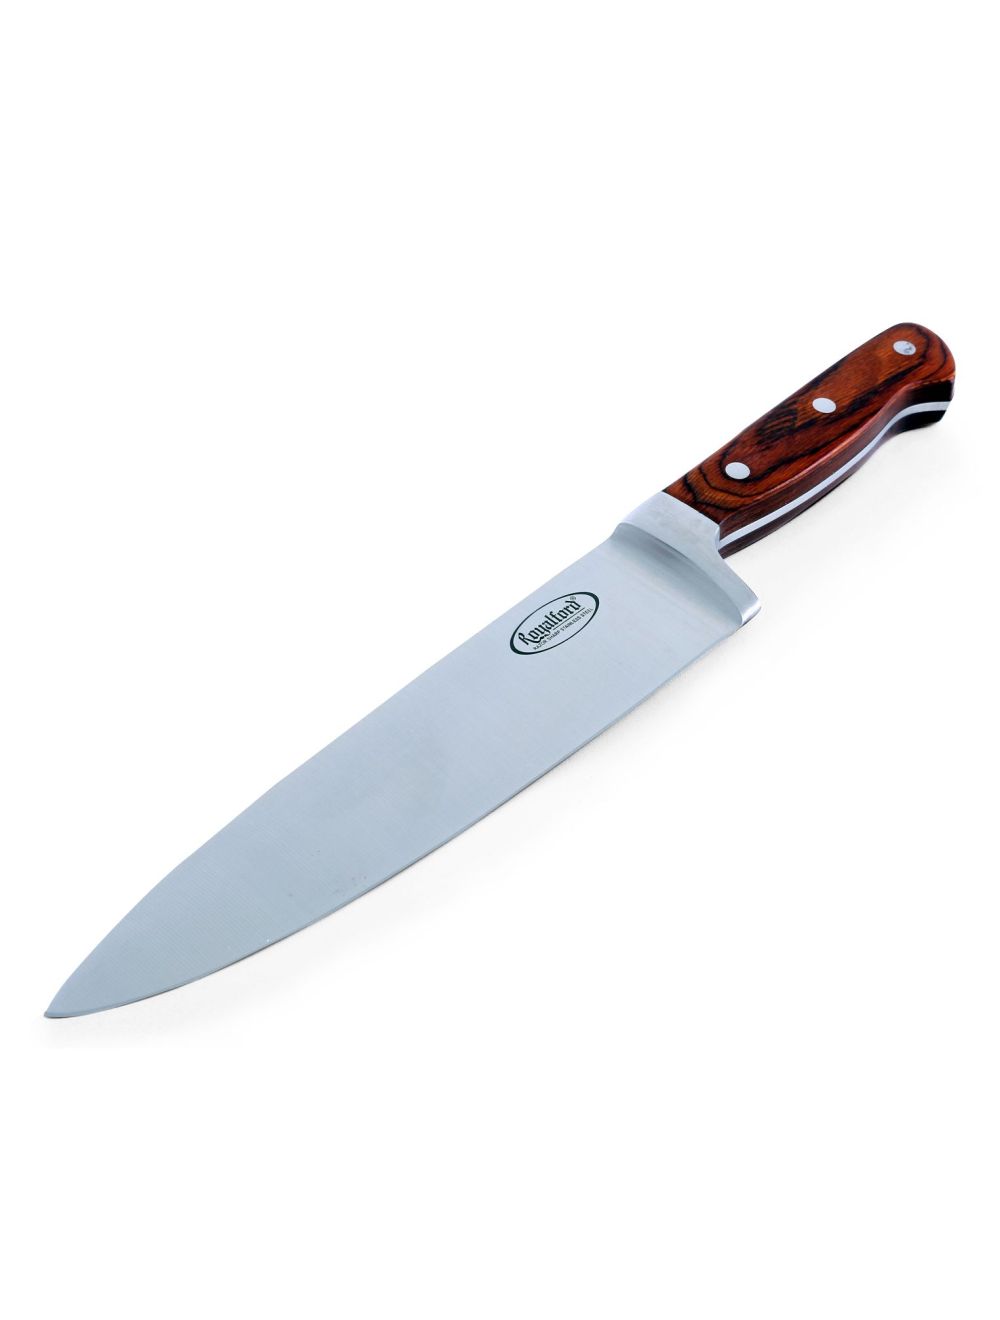 Royalford RF4110 Chef Knife, 8 Inch